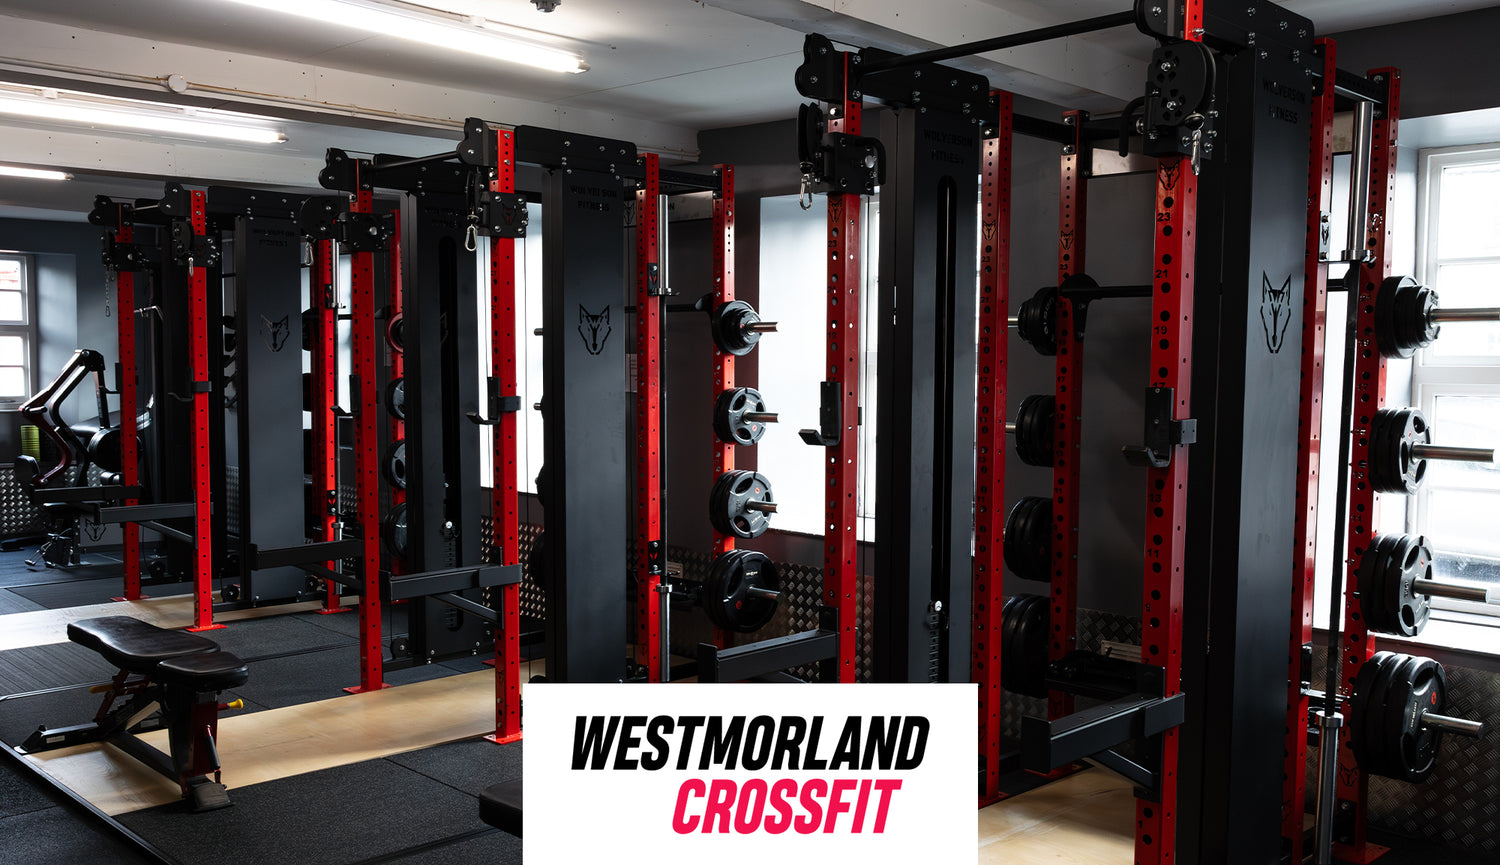 Westmorland CrossFit